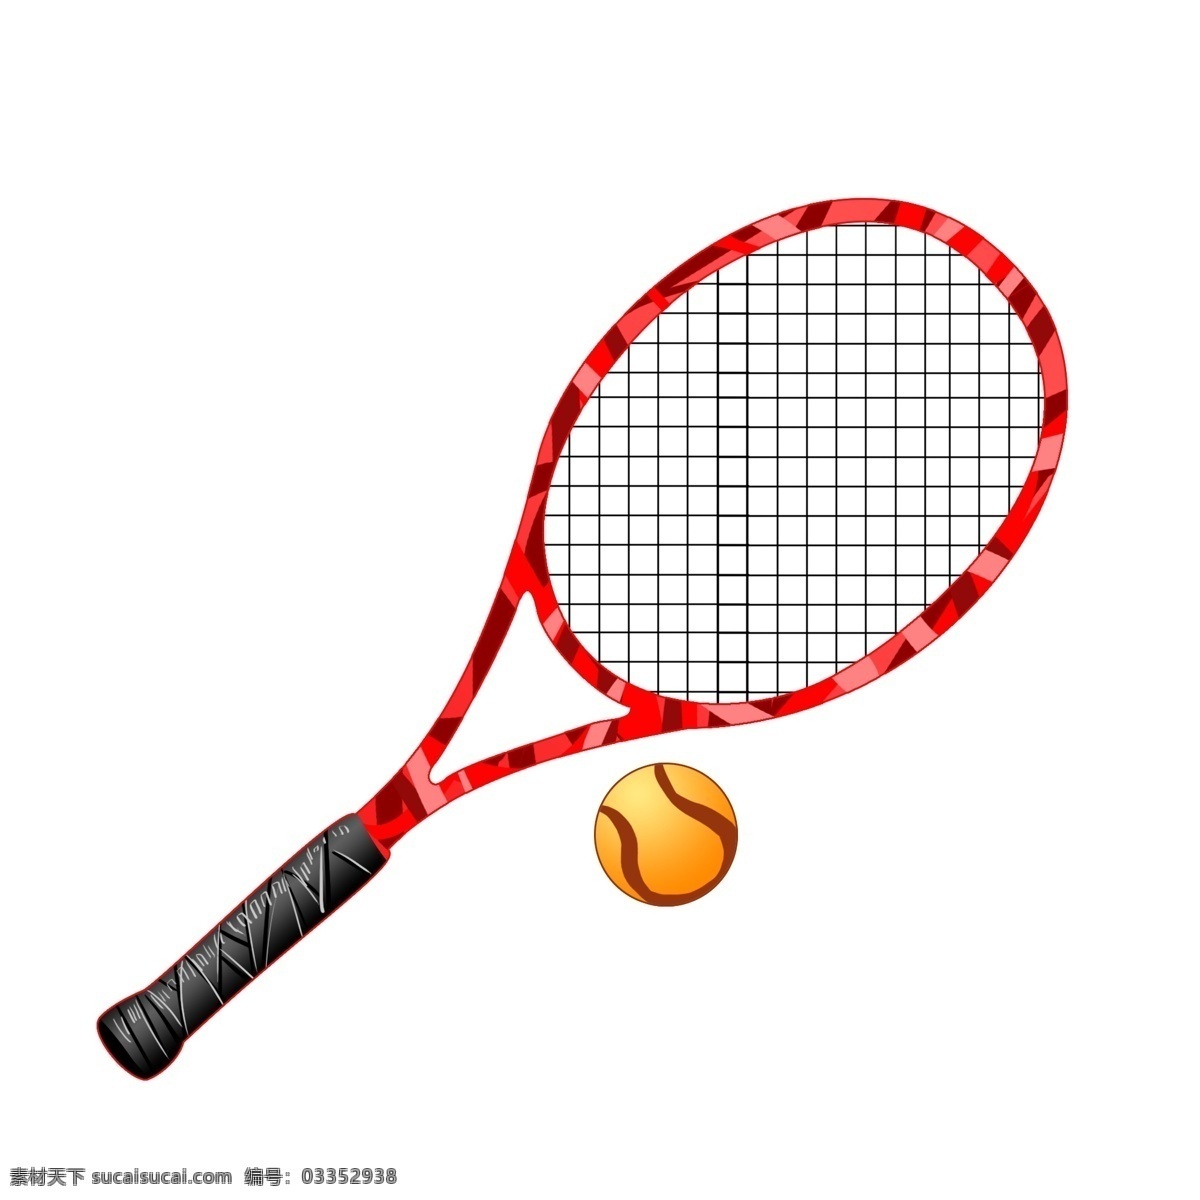 红色 网球拍 插画 红色的网球拍 漂亮的网球拍 手绘网球拍 黄色的网球 创意网球拍 网球拍插画